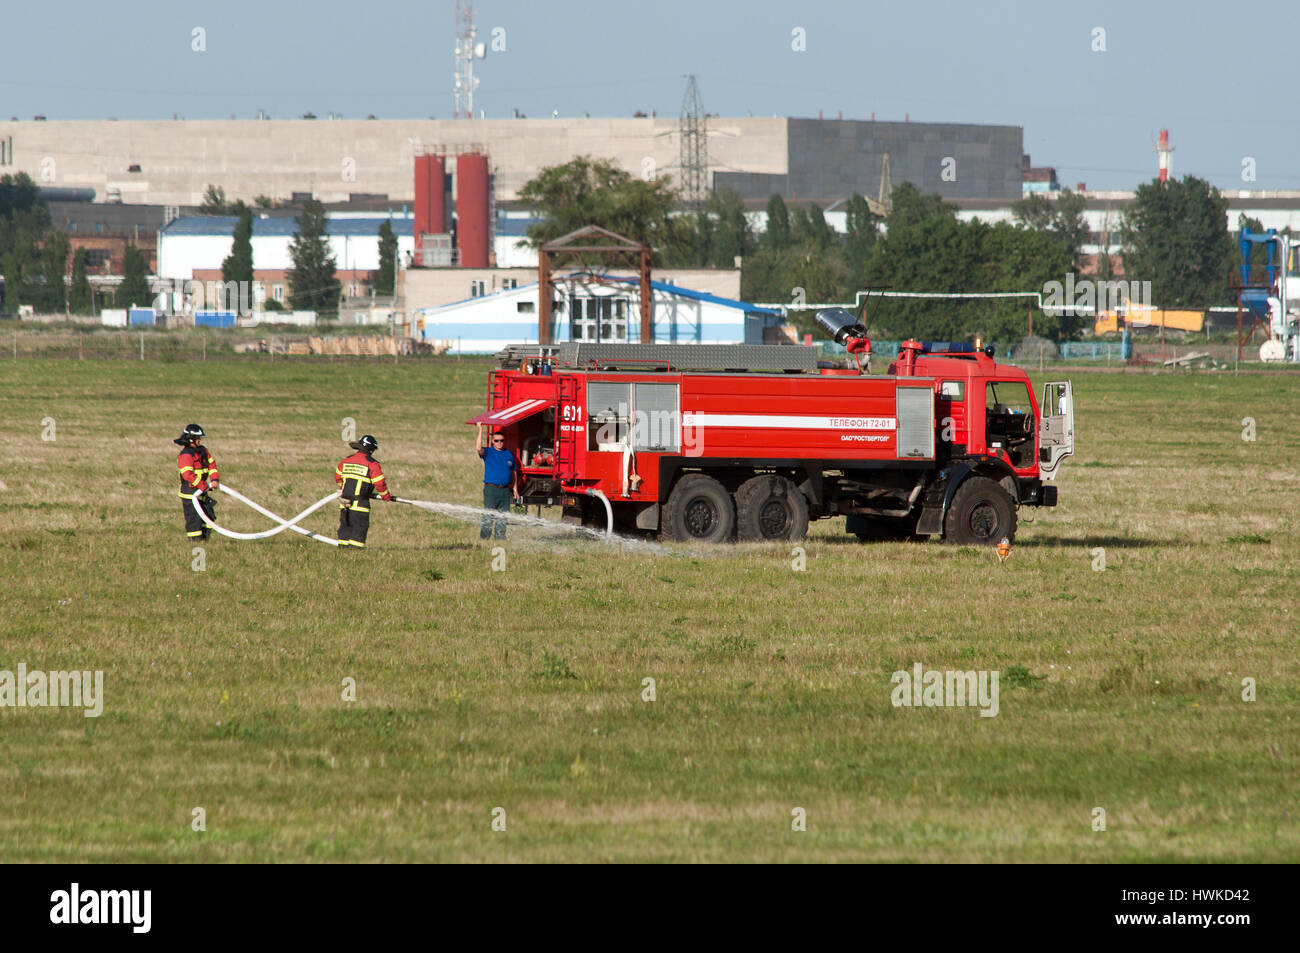 Demonstration der Feuer-Ausrüstung, Rostow am Don, Russland, 1. Juli 2014. Gebiet der Hubschrauber-Anlage. Stockfoto